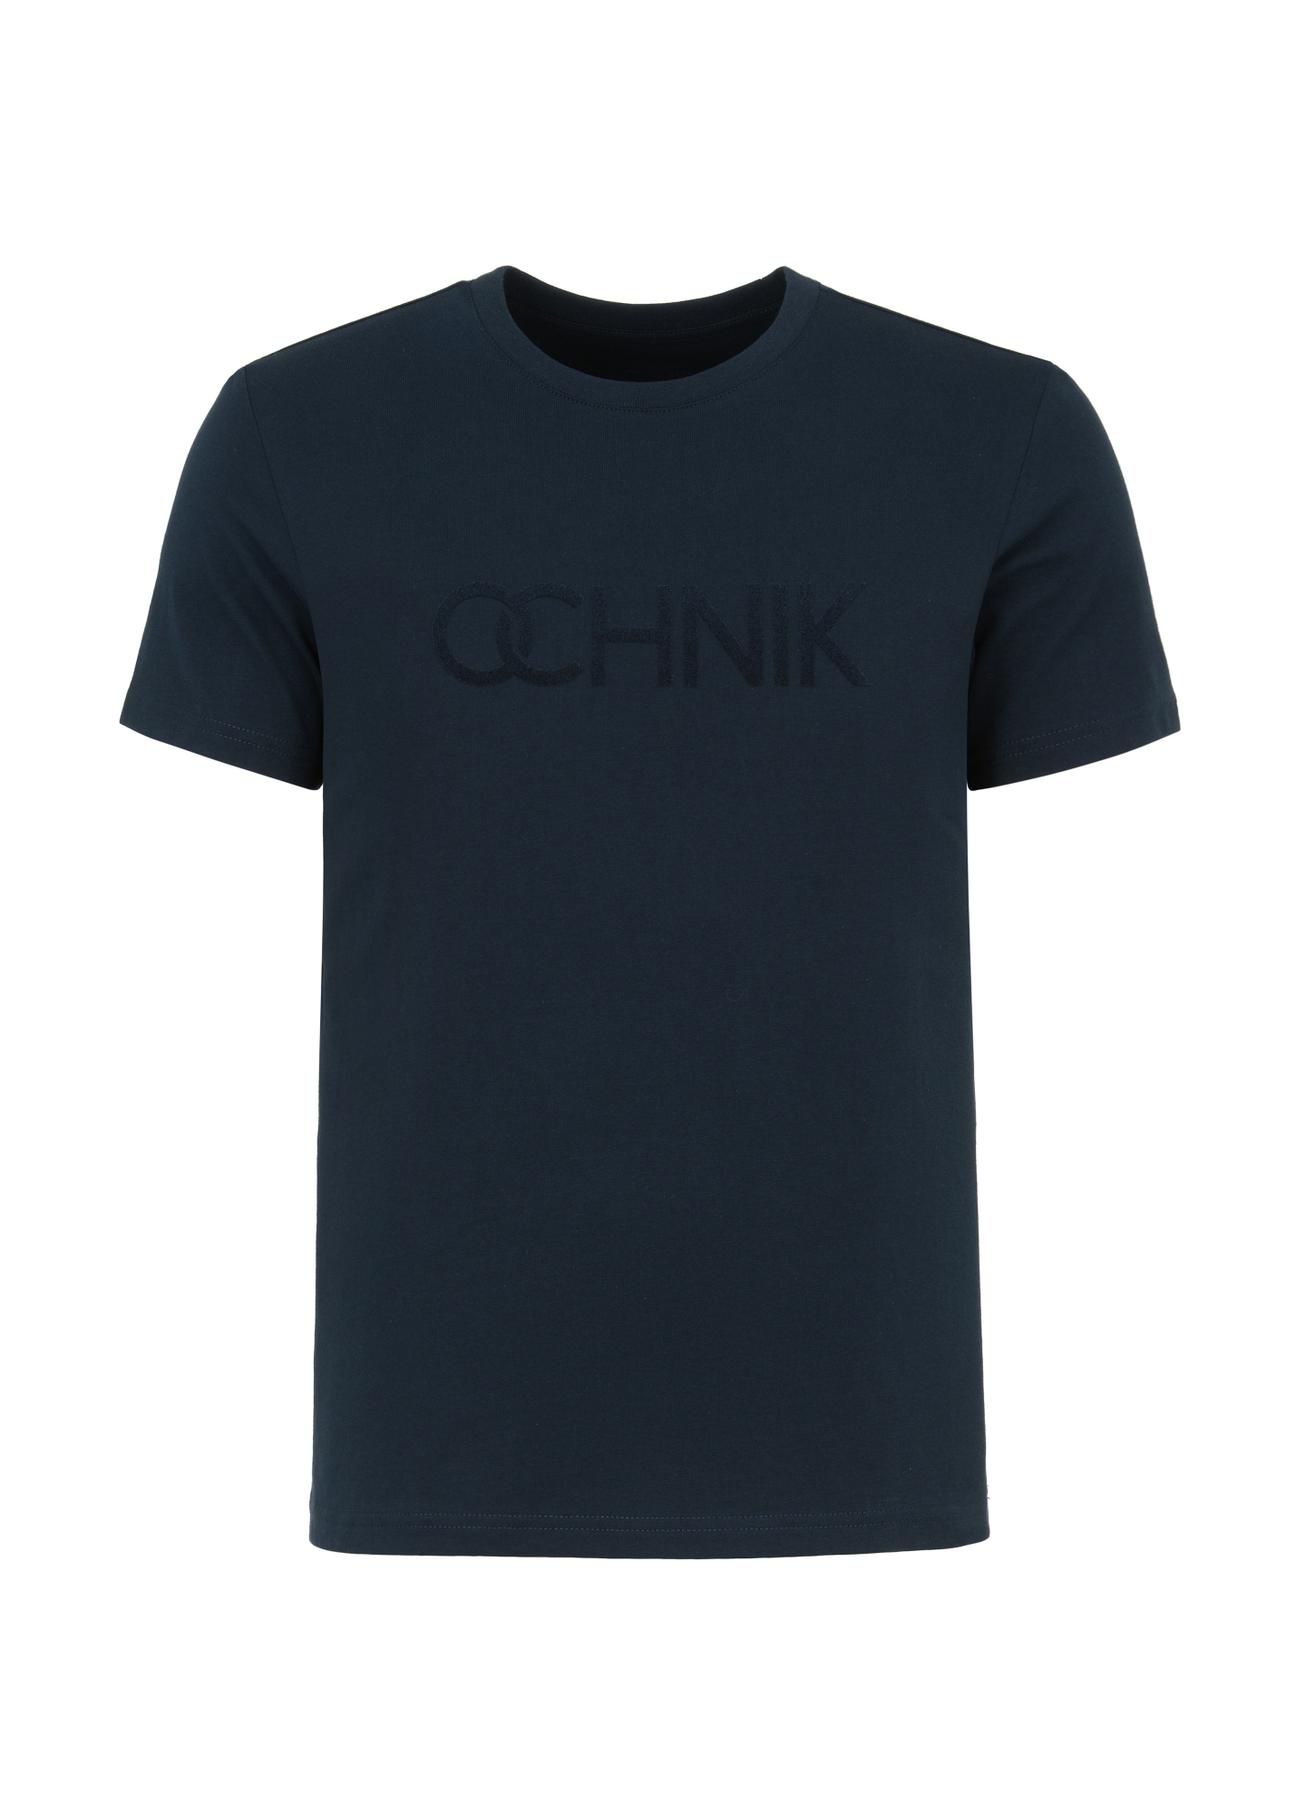 Granatowy T-shirt męski z logo TSHMT-0090-69(W23)